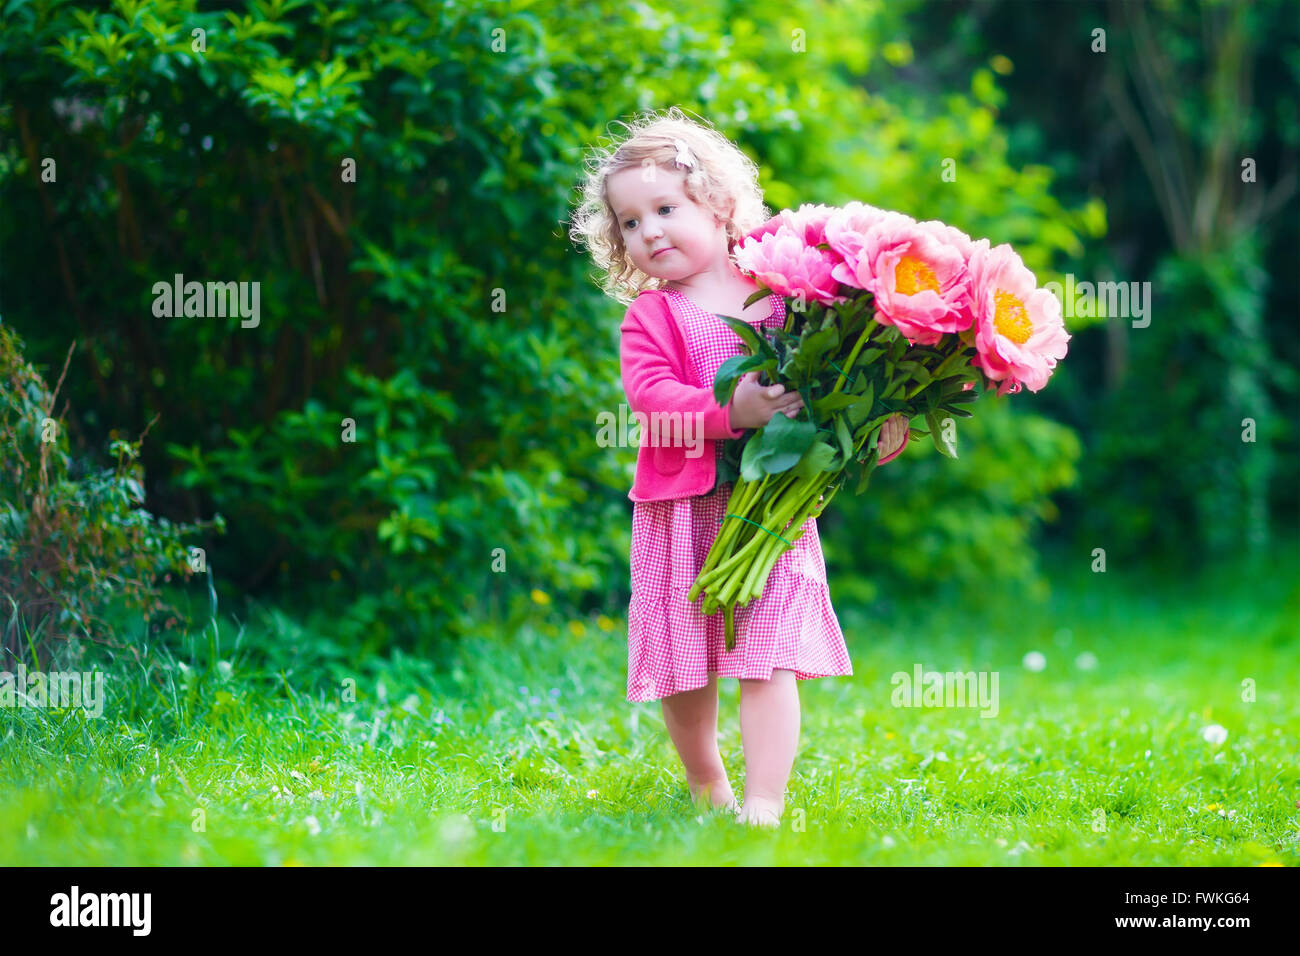 Kleine süße Mädchen mit Pfingstrosen Blumen. Das Kind trägt ein rosa Kleid im Sommergarten spielen. Kinder im Garten. Kinder spielen im freien Stockfoto